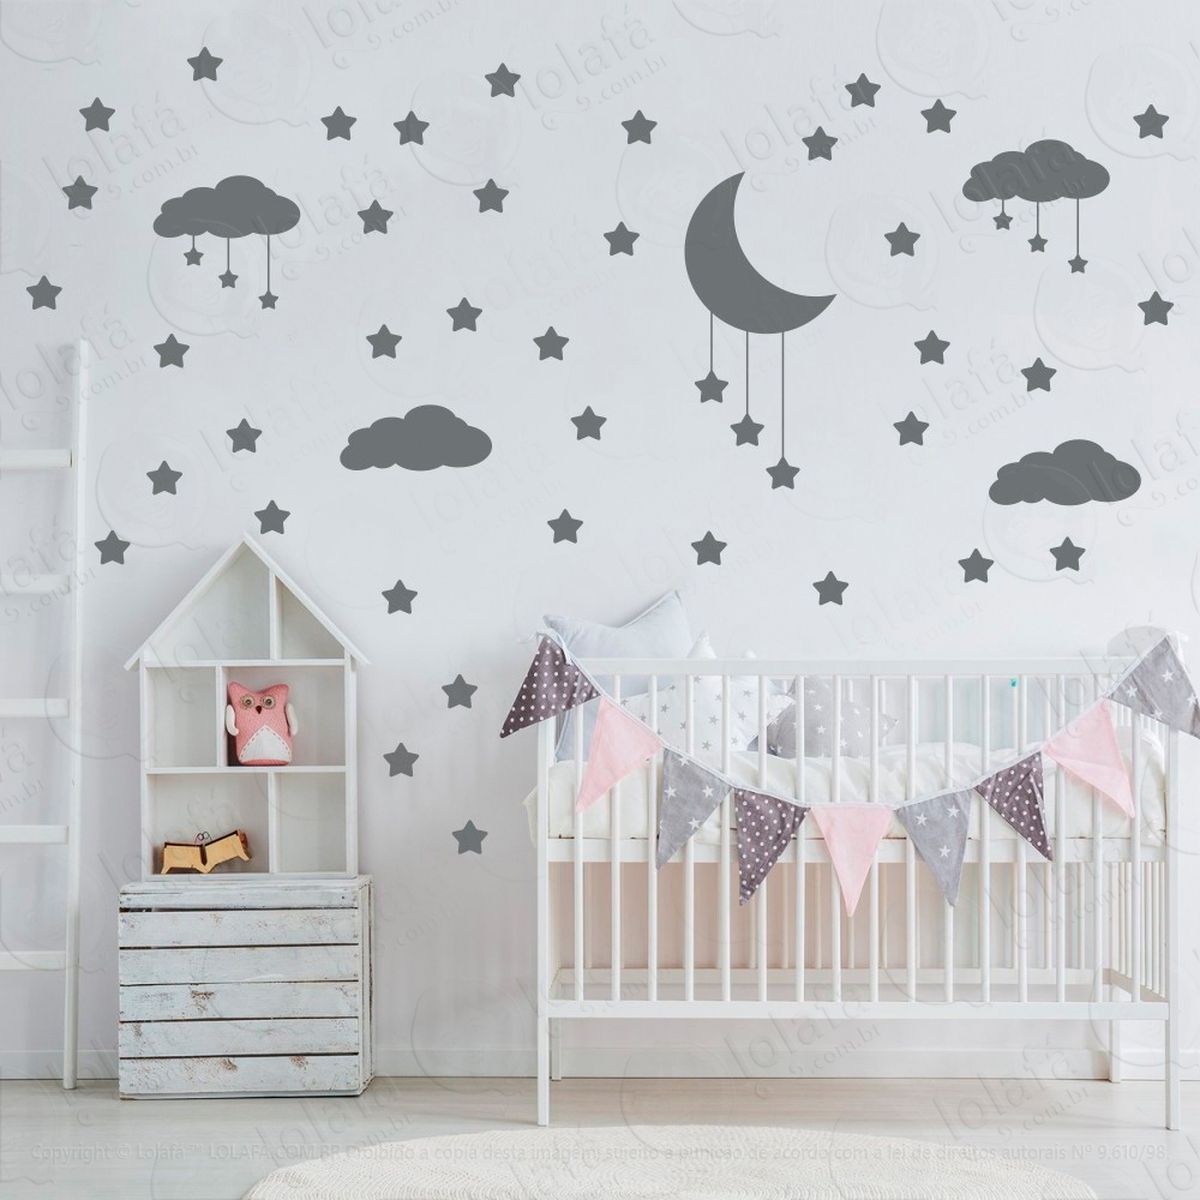 adesivos nuvens estrelas e lua 60 peças adesivos para quarto de bebê infantil - mod:740